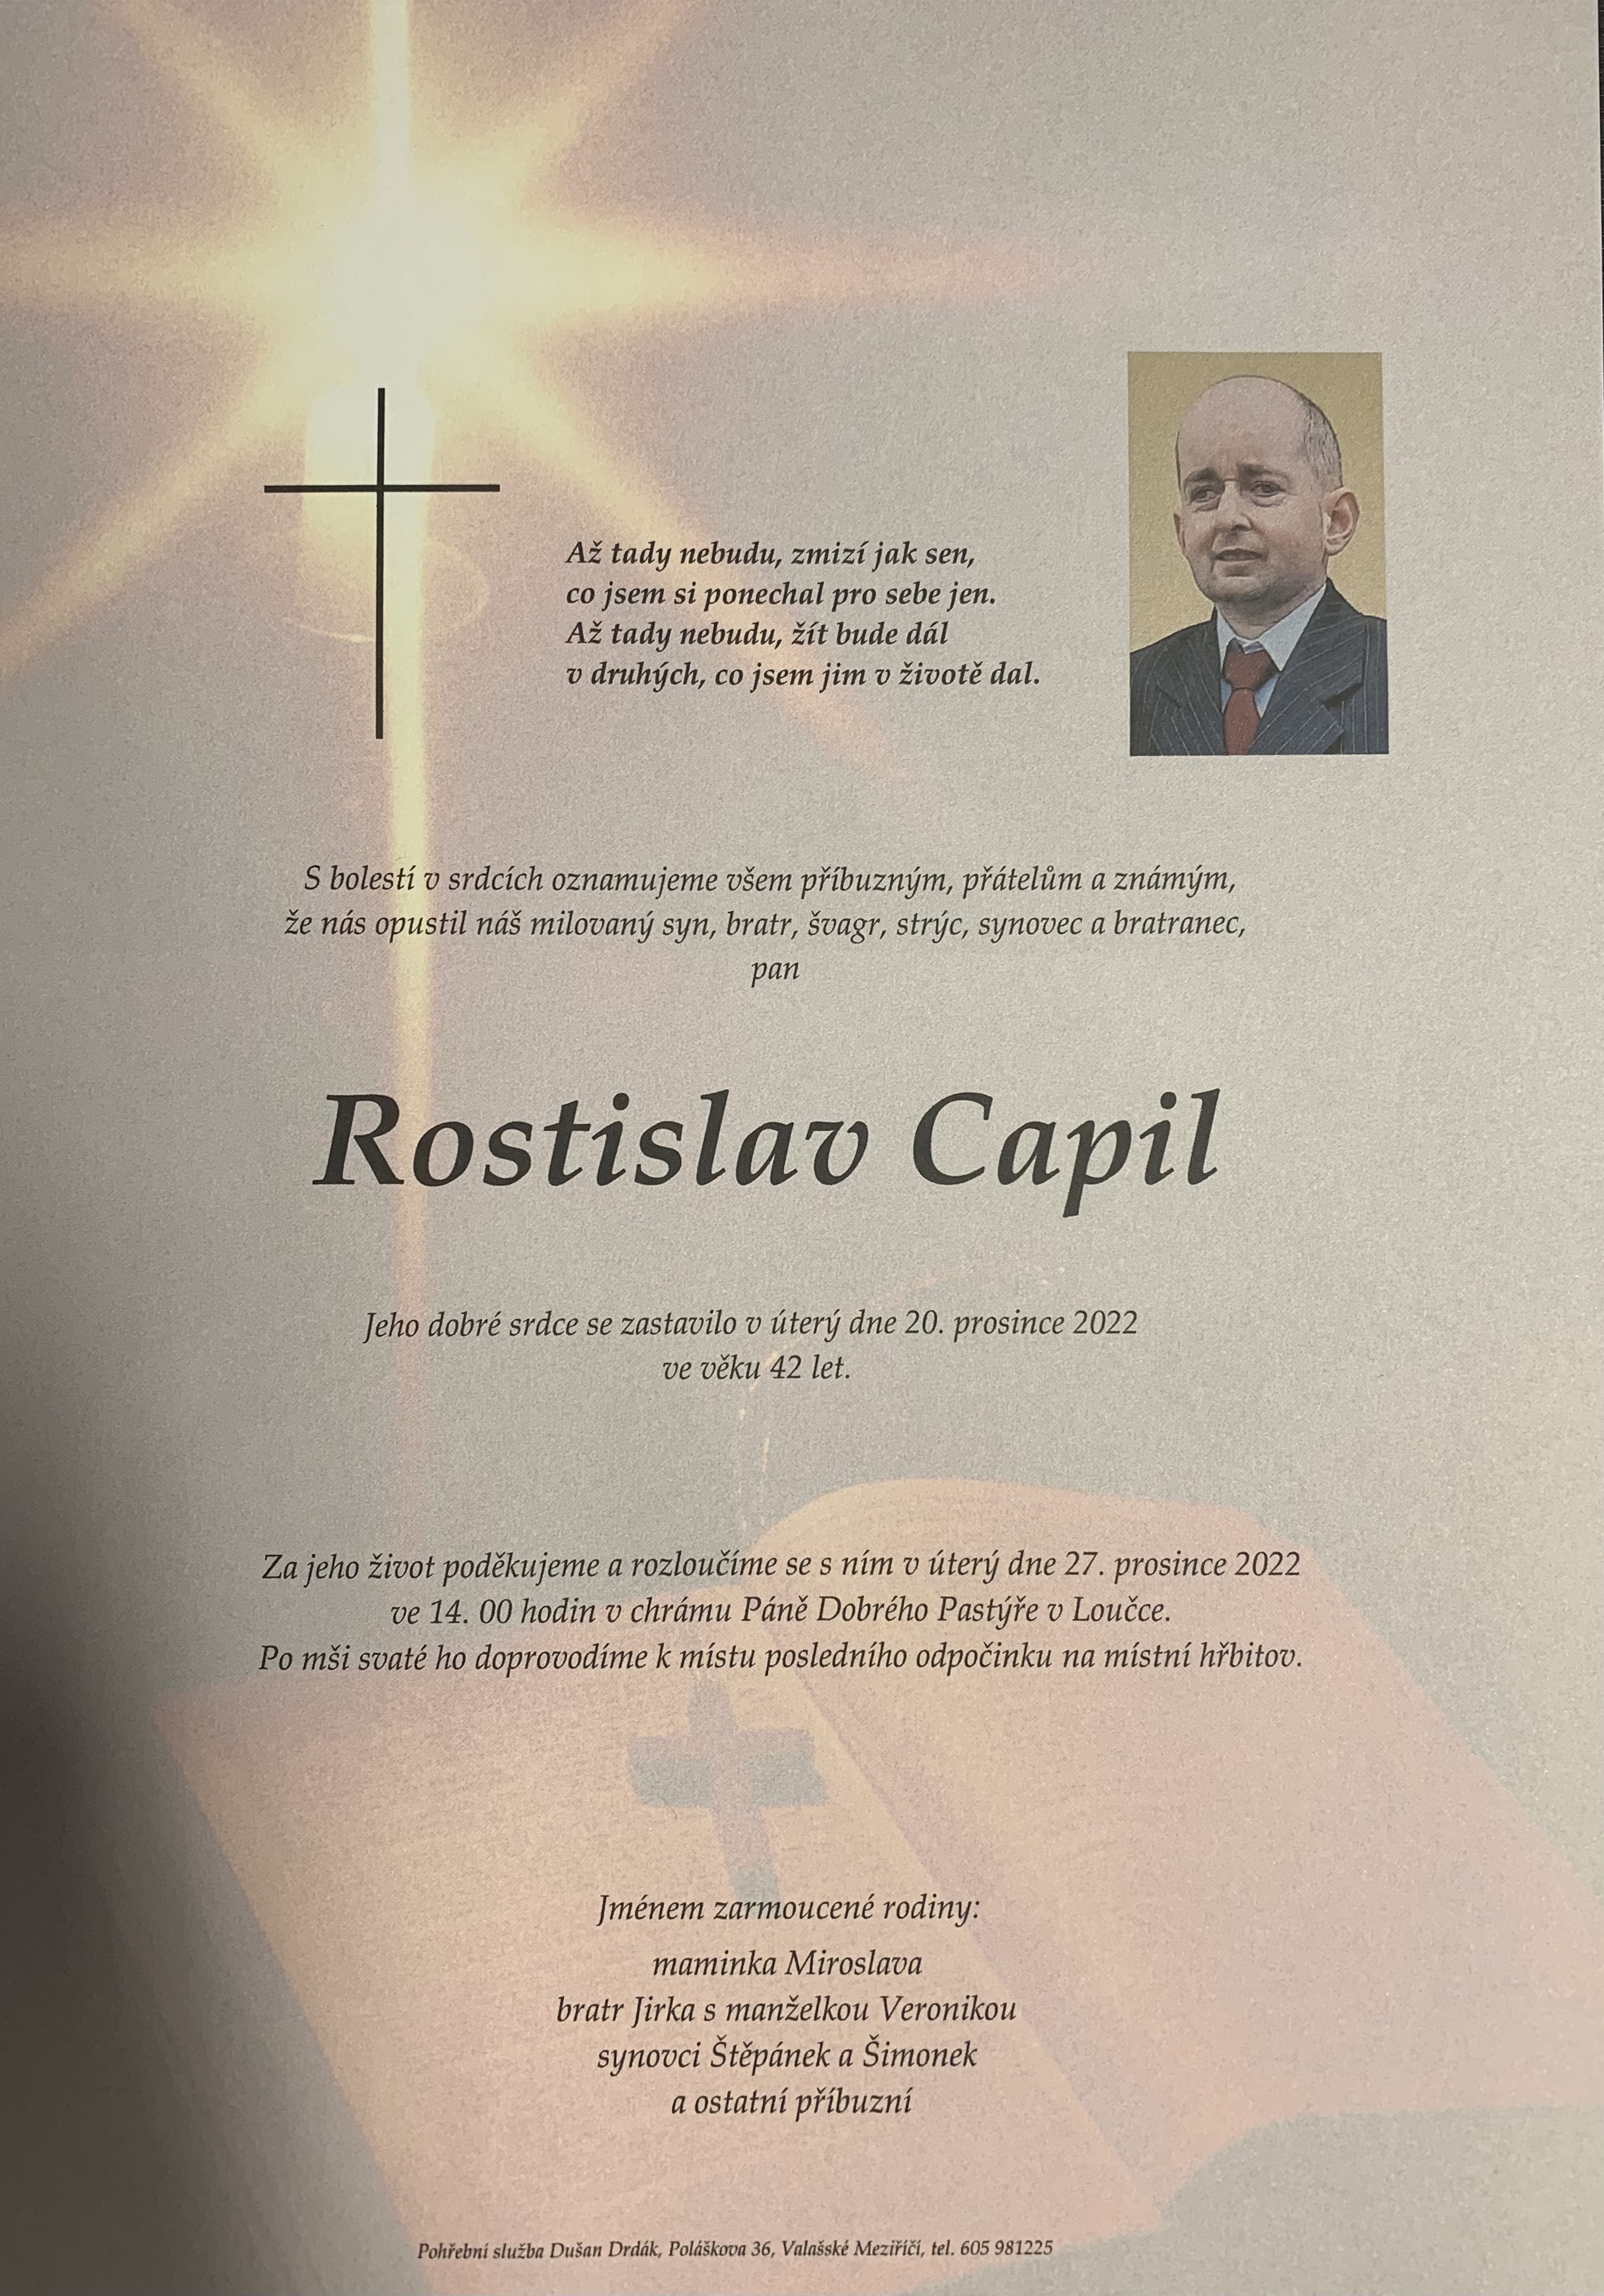 Rostislav Capil